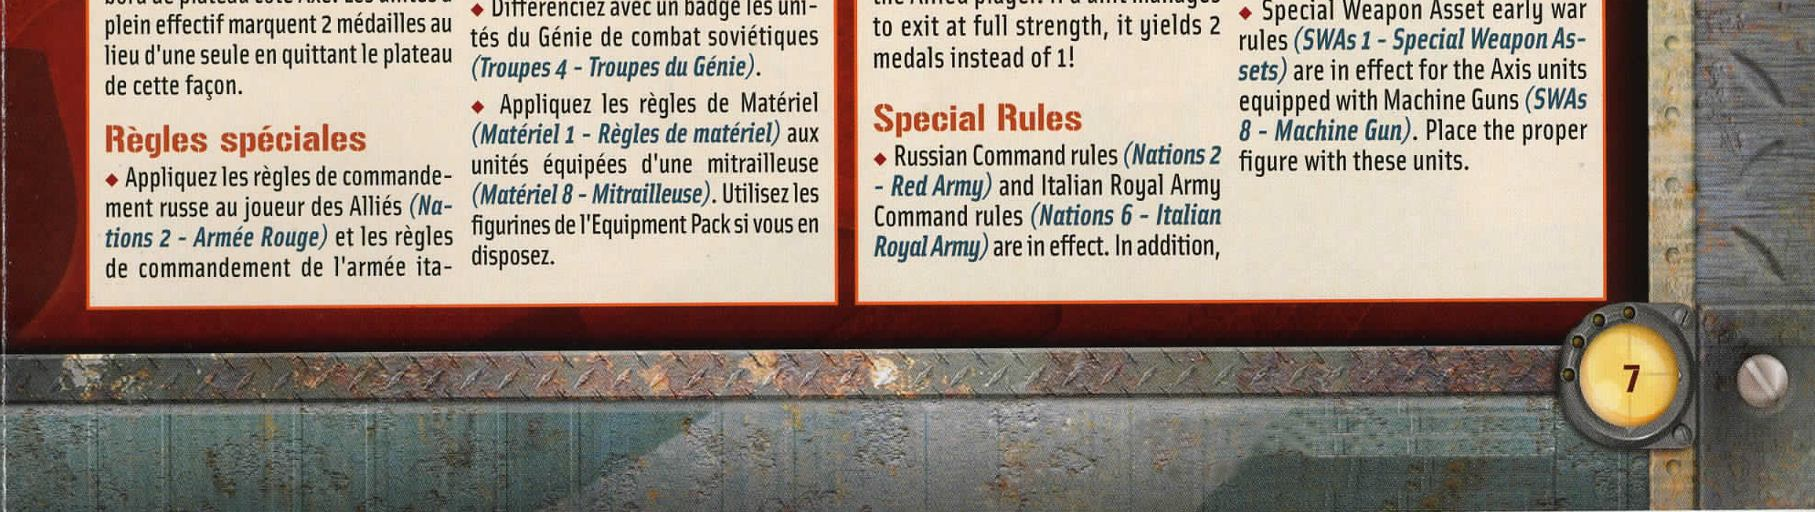 Las reglas de mando rusas (Naciones 2 Ejército Rojo) y las reglas de mando del Ejército Real Italiano (Naciones 6 Ejército Real Italiano) están en vigor.